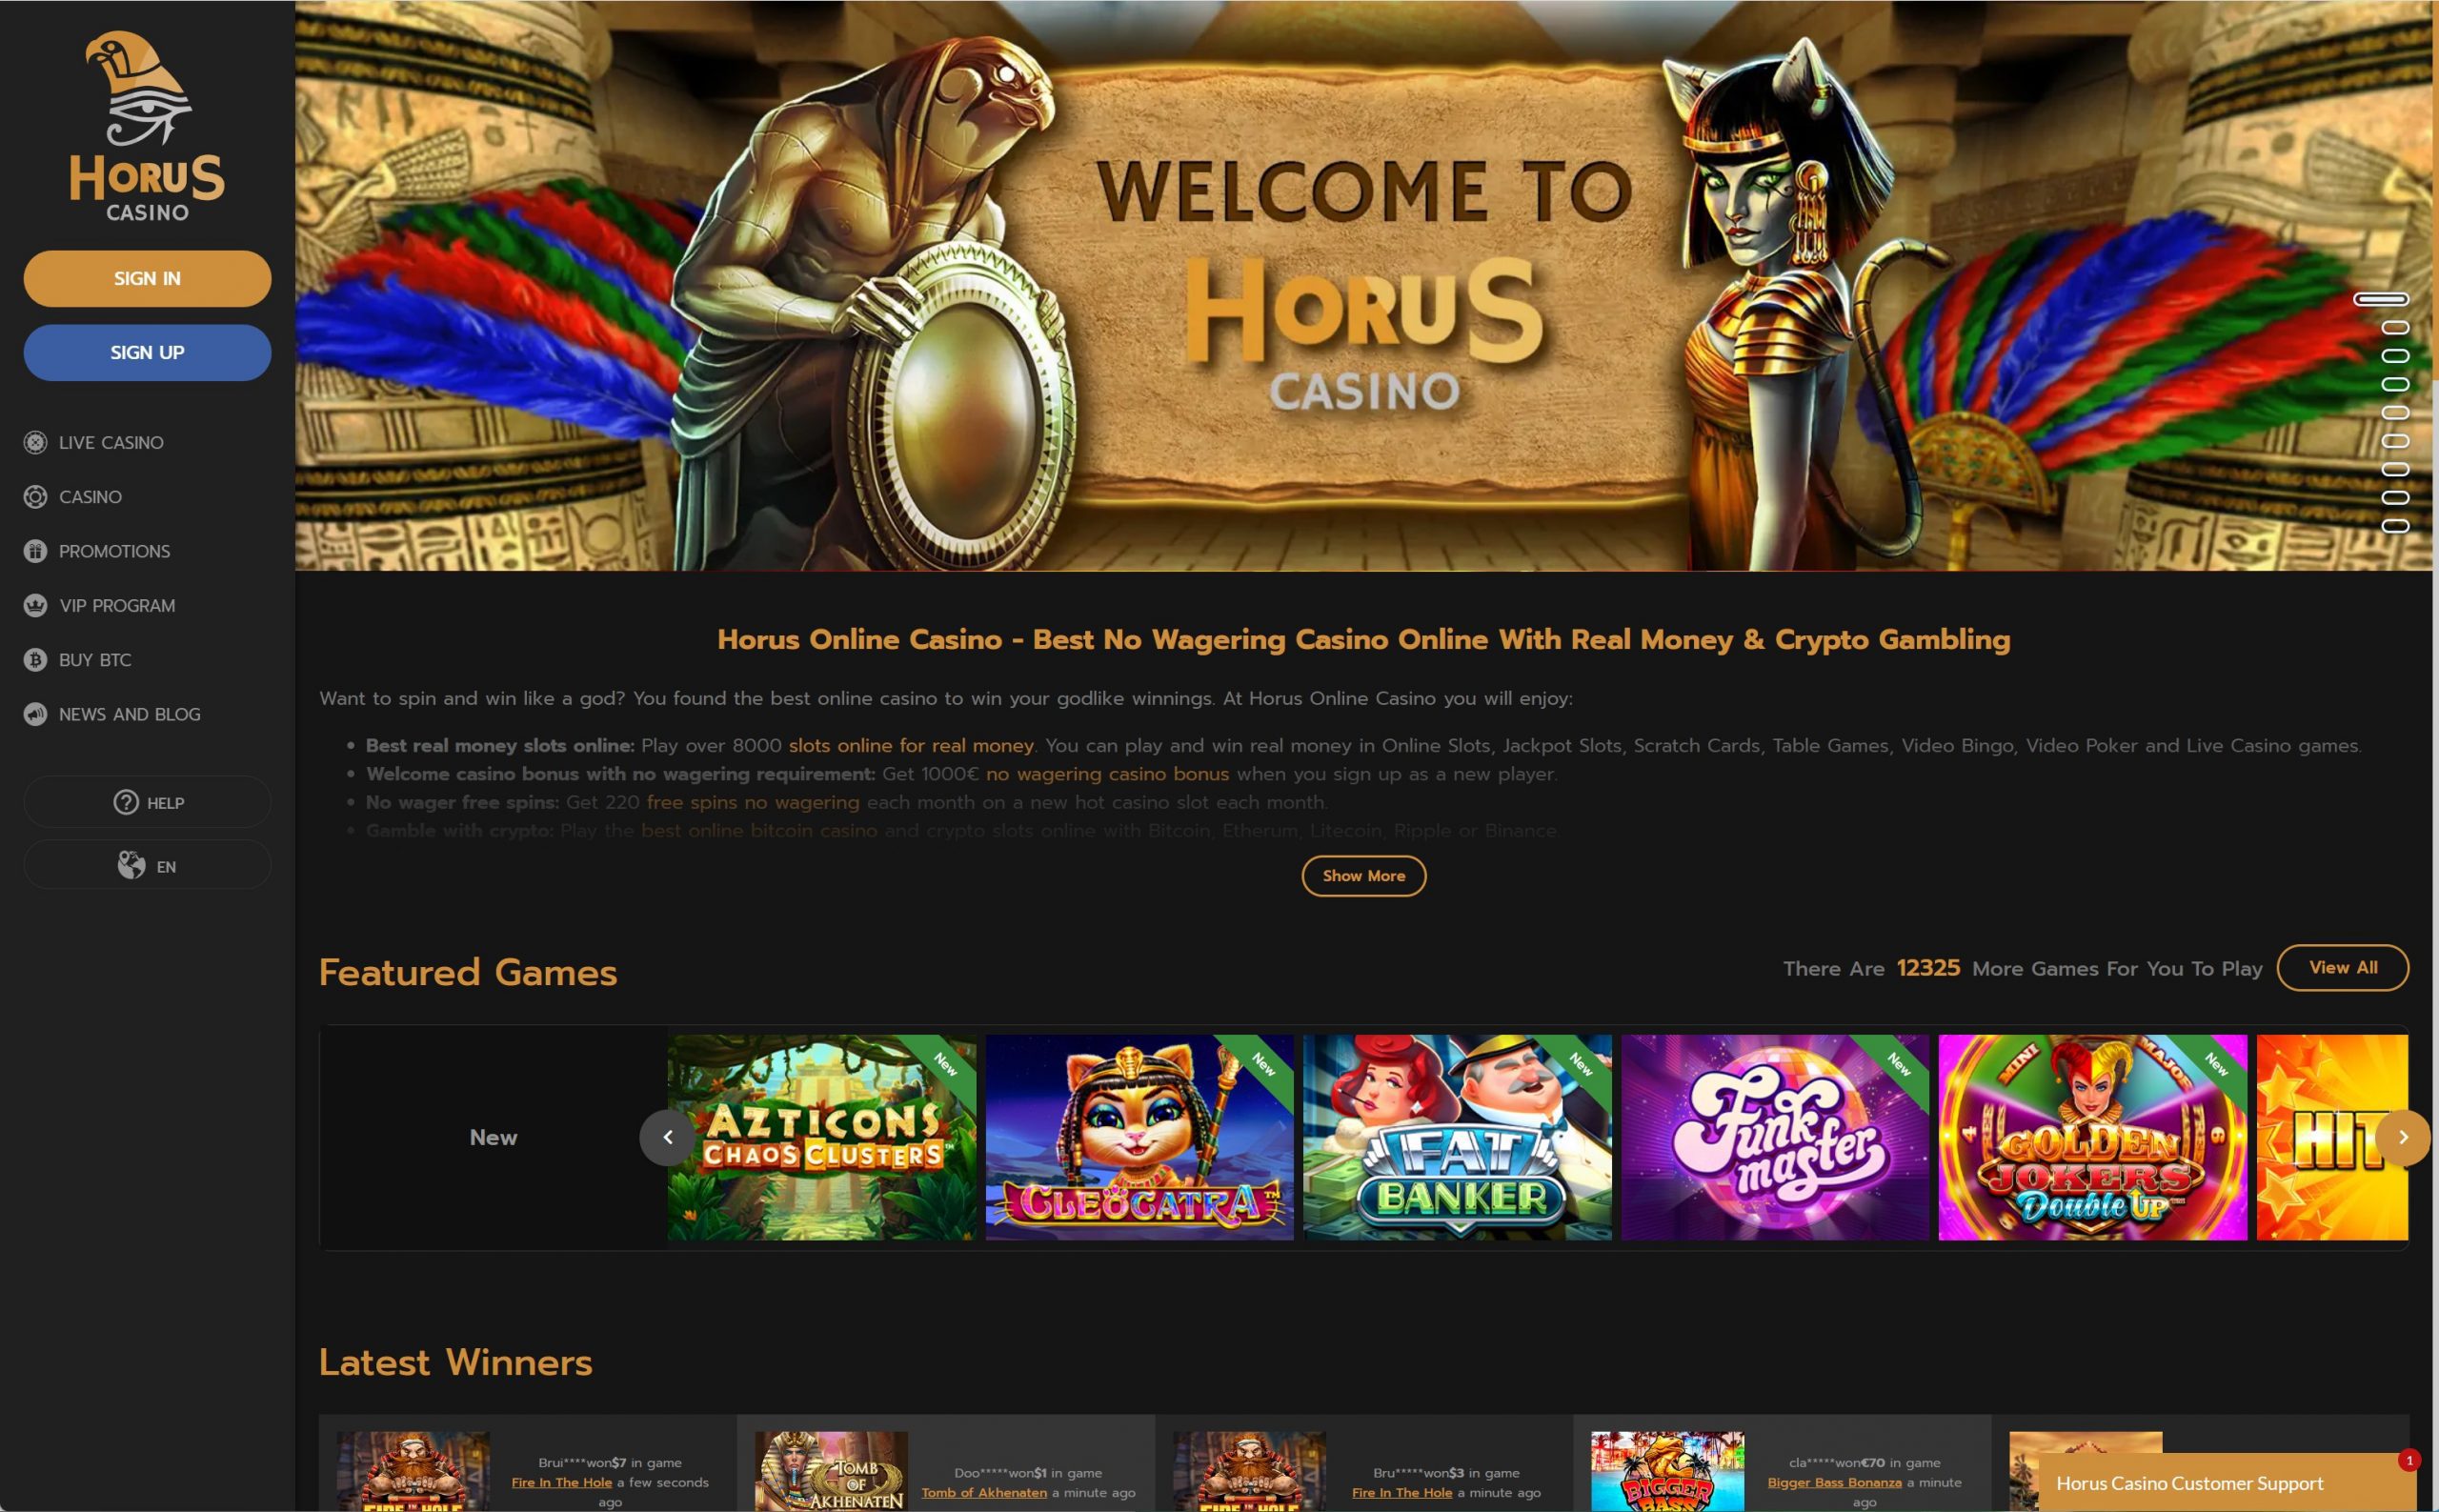 Upplev Nya Horus Casino med VIP Program & Spännande Slots!